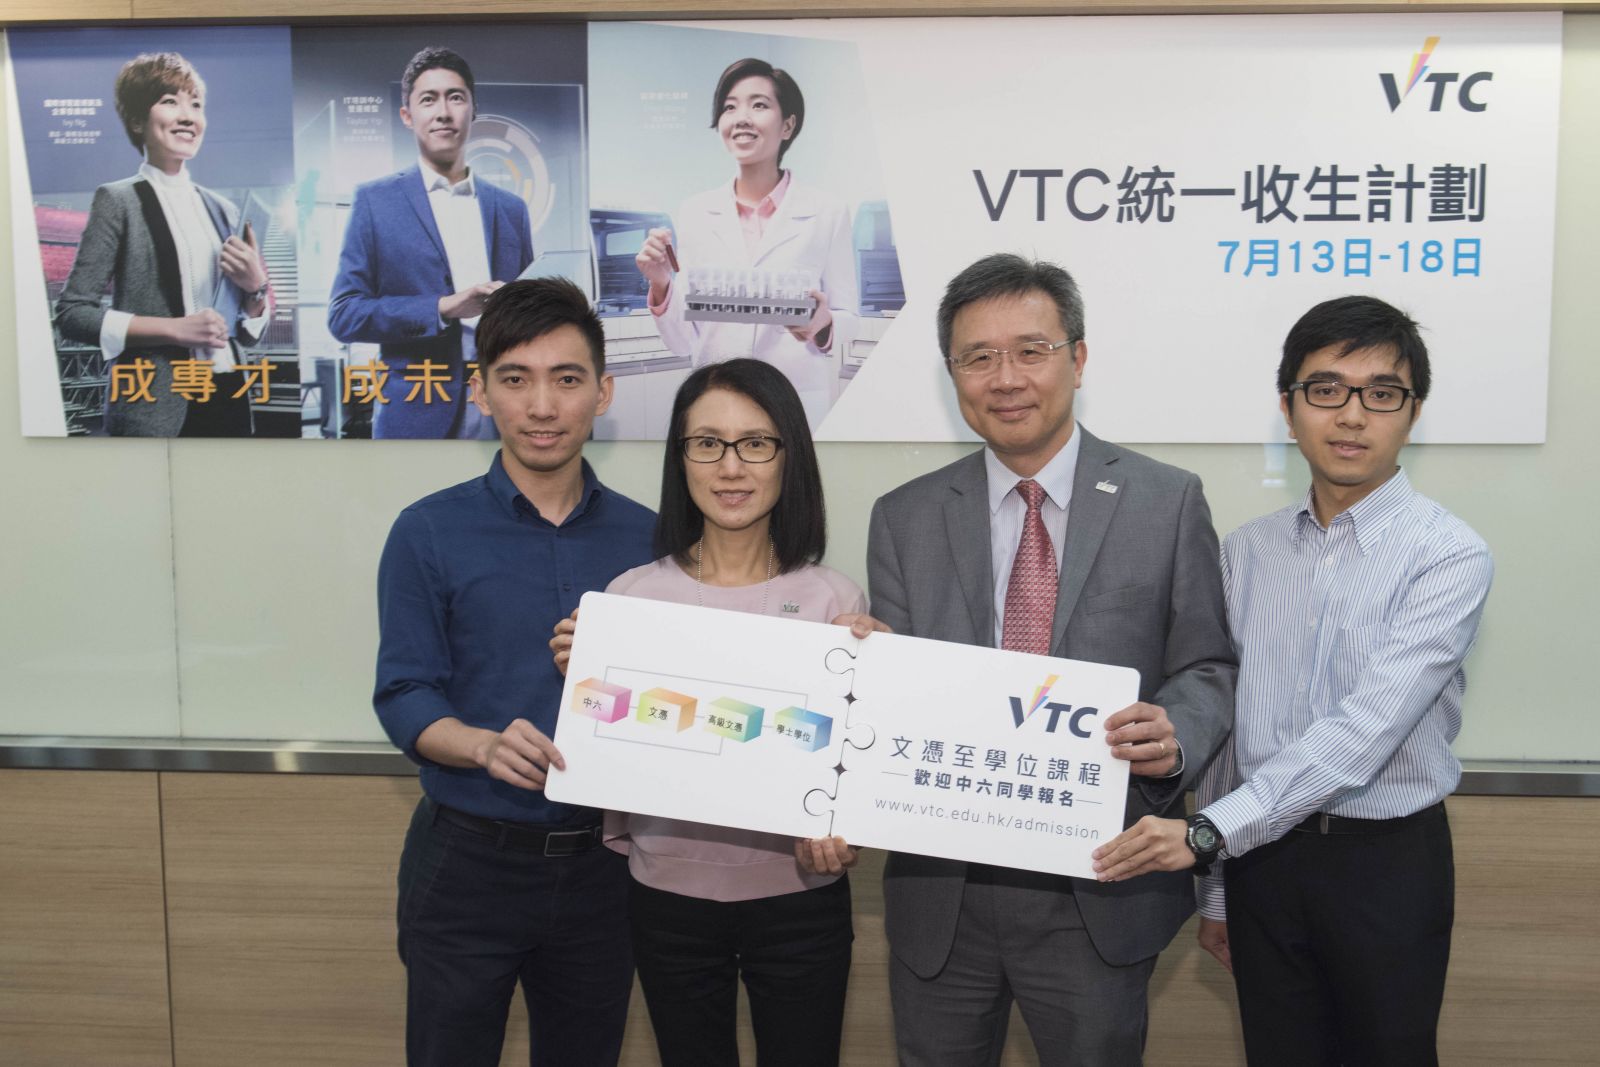 VTC統一收生計劃 歡迎文憑試考生報讀課程